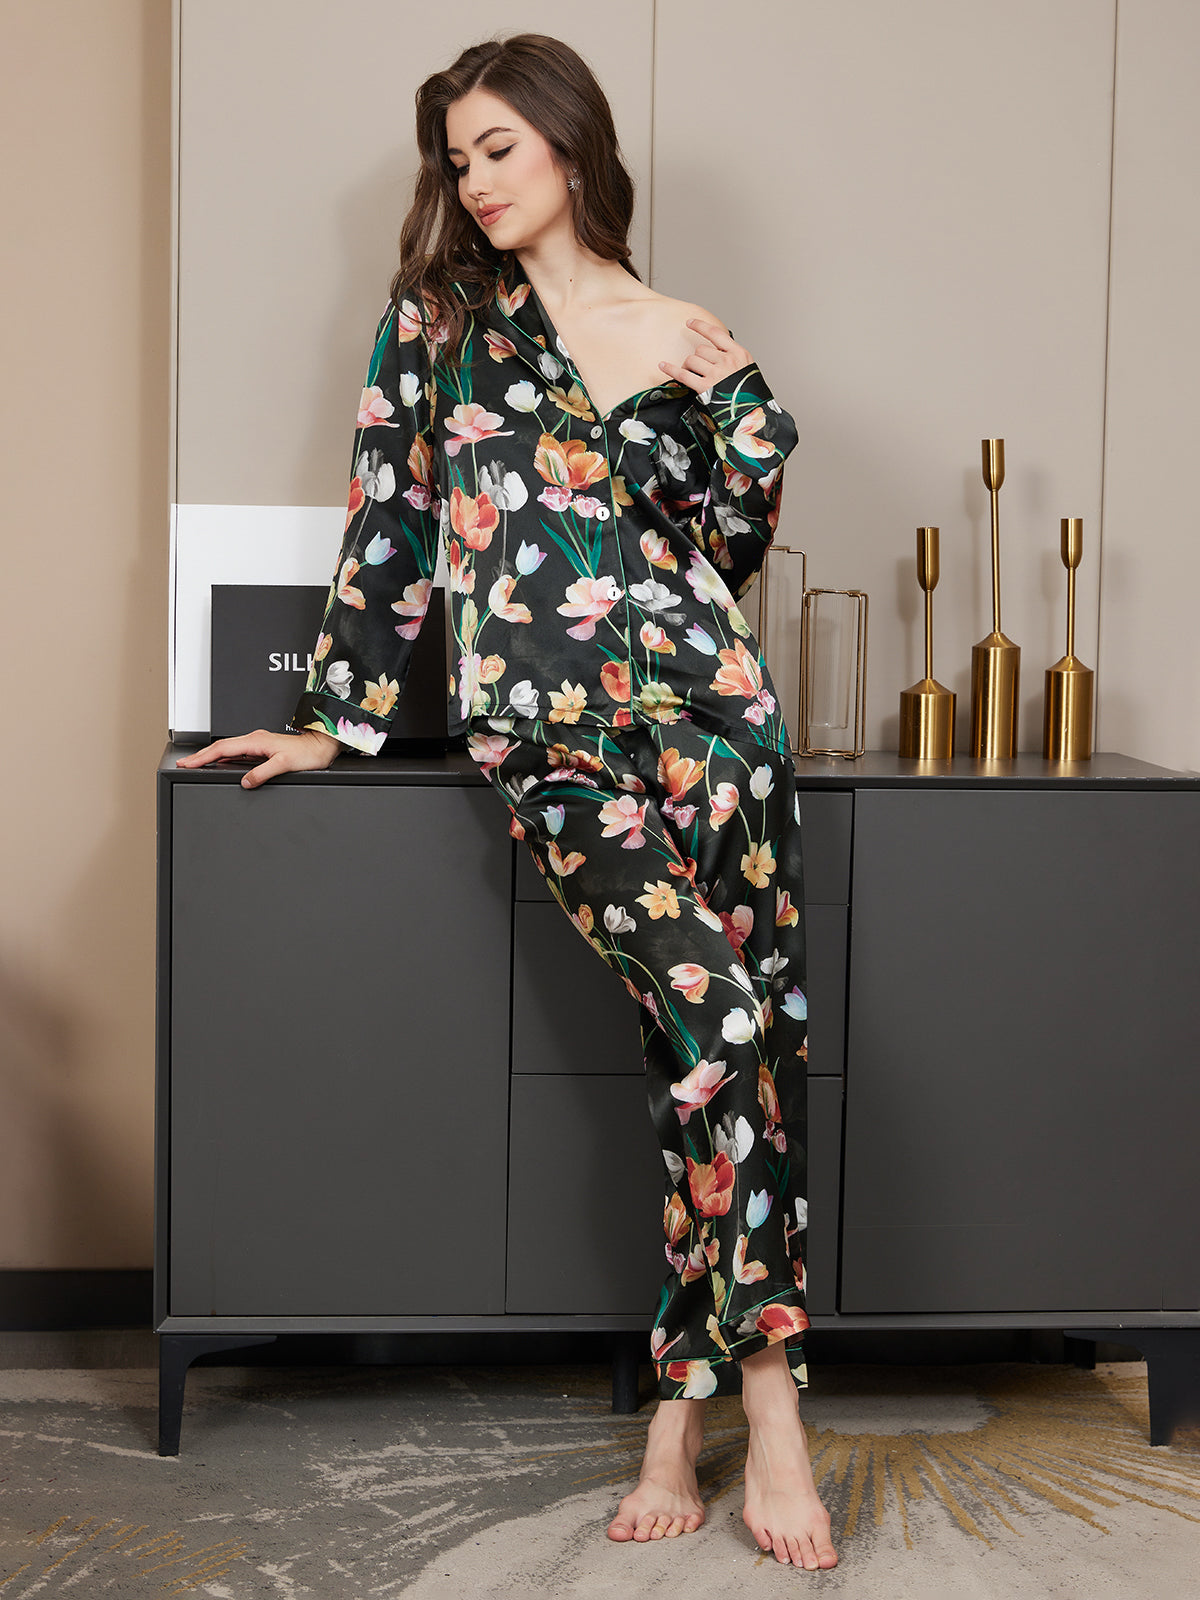 Anette - Floral Pyjama set - 2-pieces